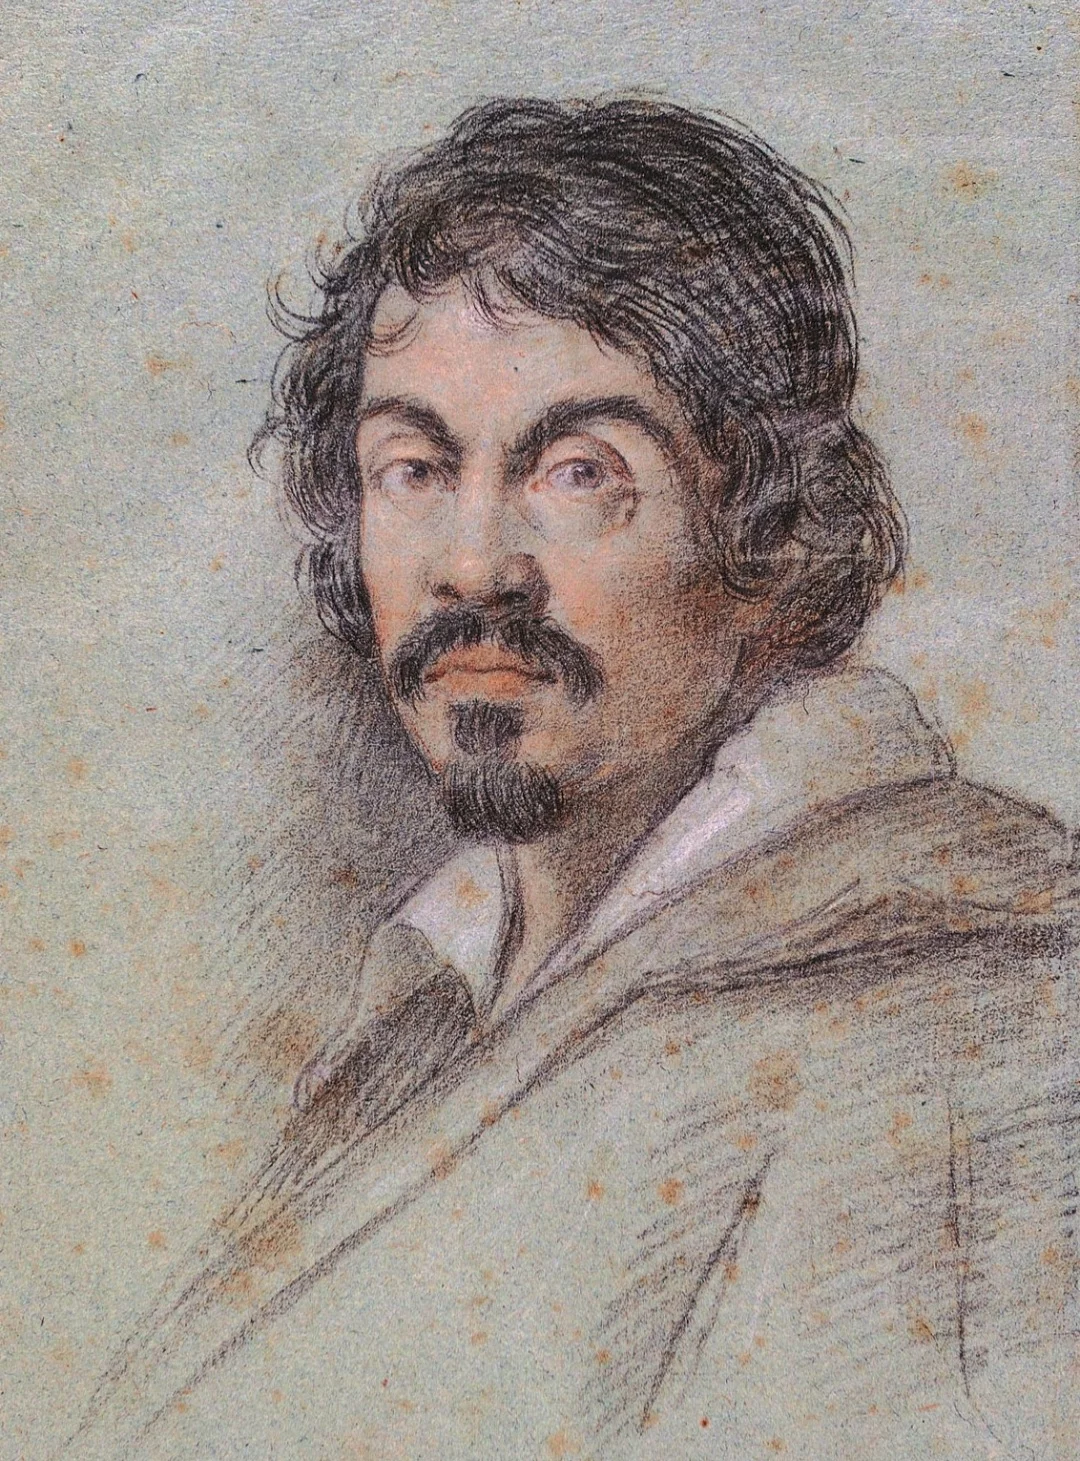 Caravaggio: O genial pintor que chocou a sociedade